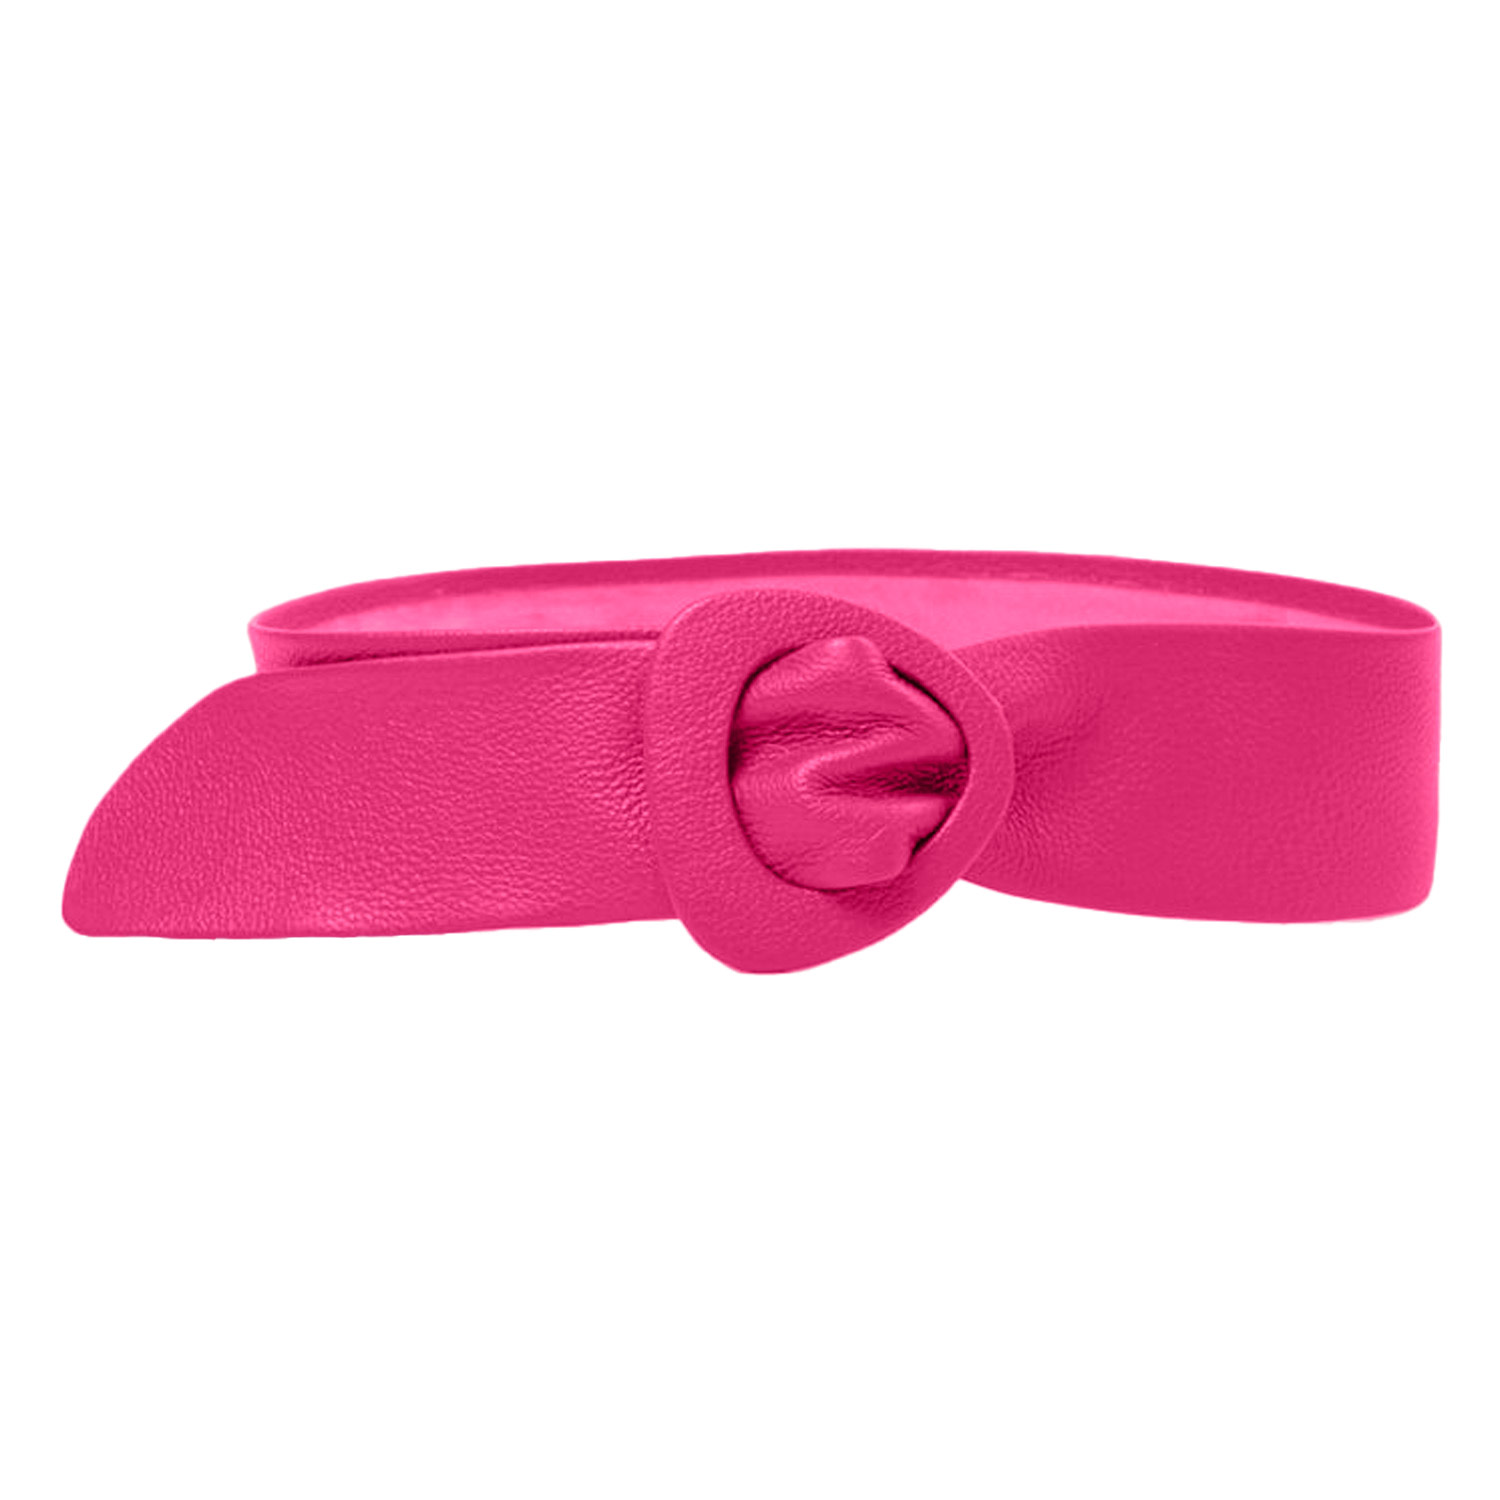 Beltbe Wide Triangle Buckle Belt In Pink